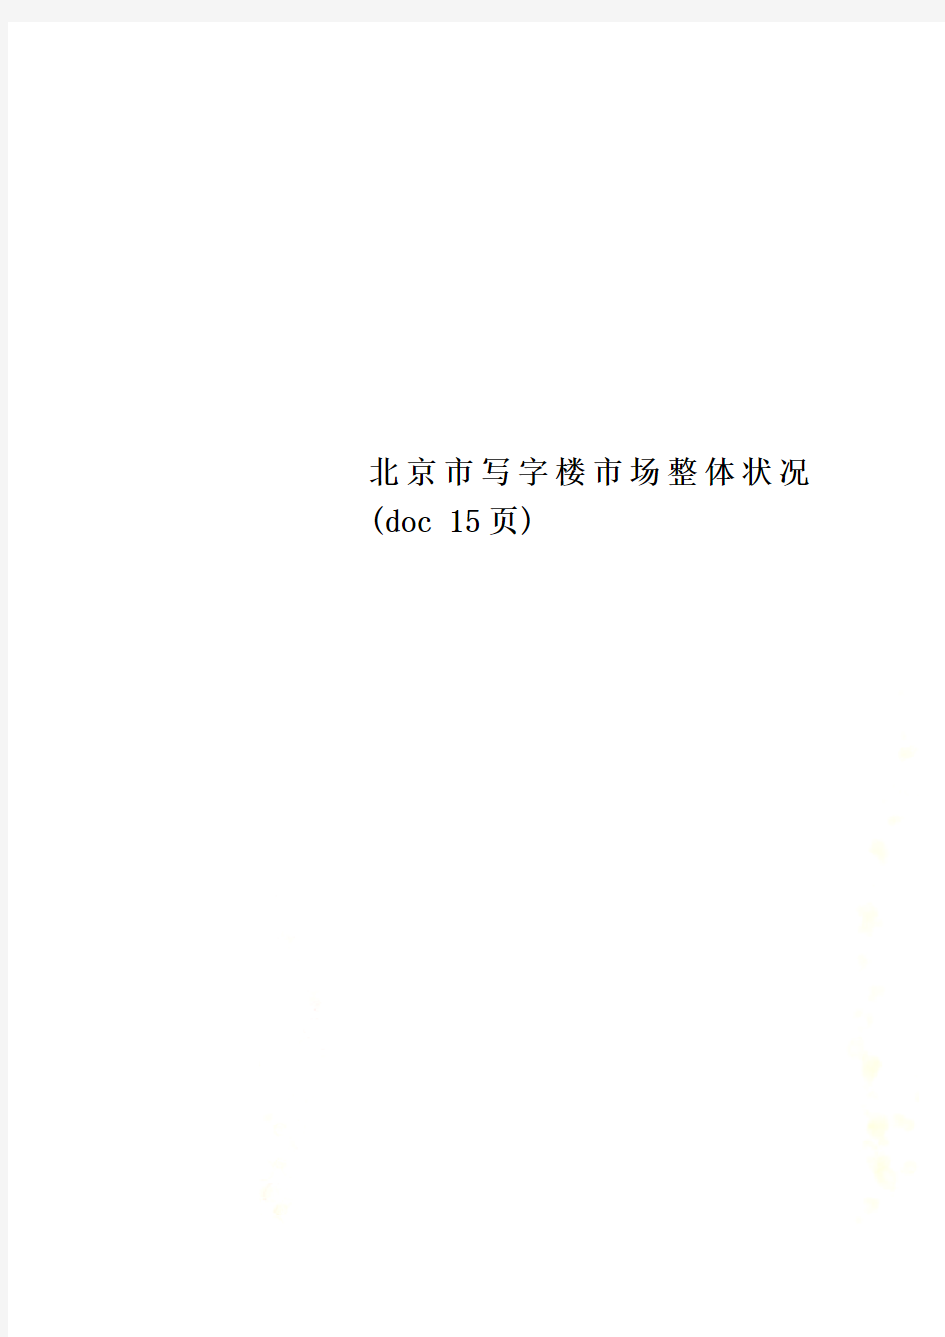 北京市写字楼市场整体状况(doc 15页)